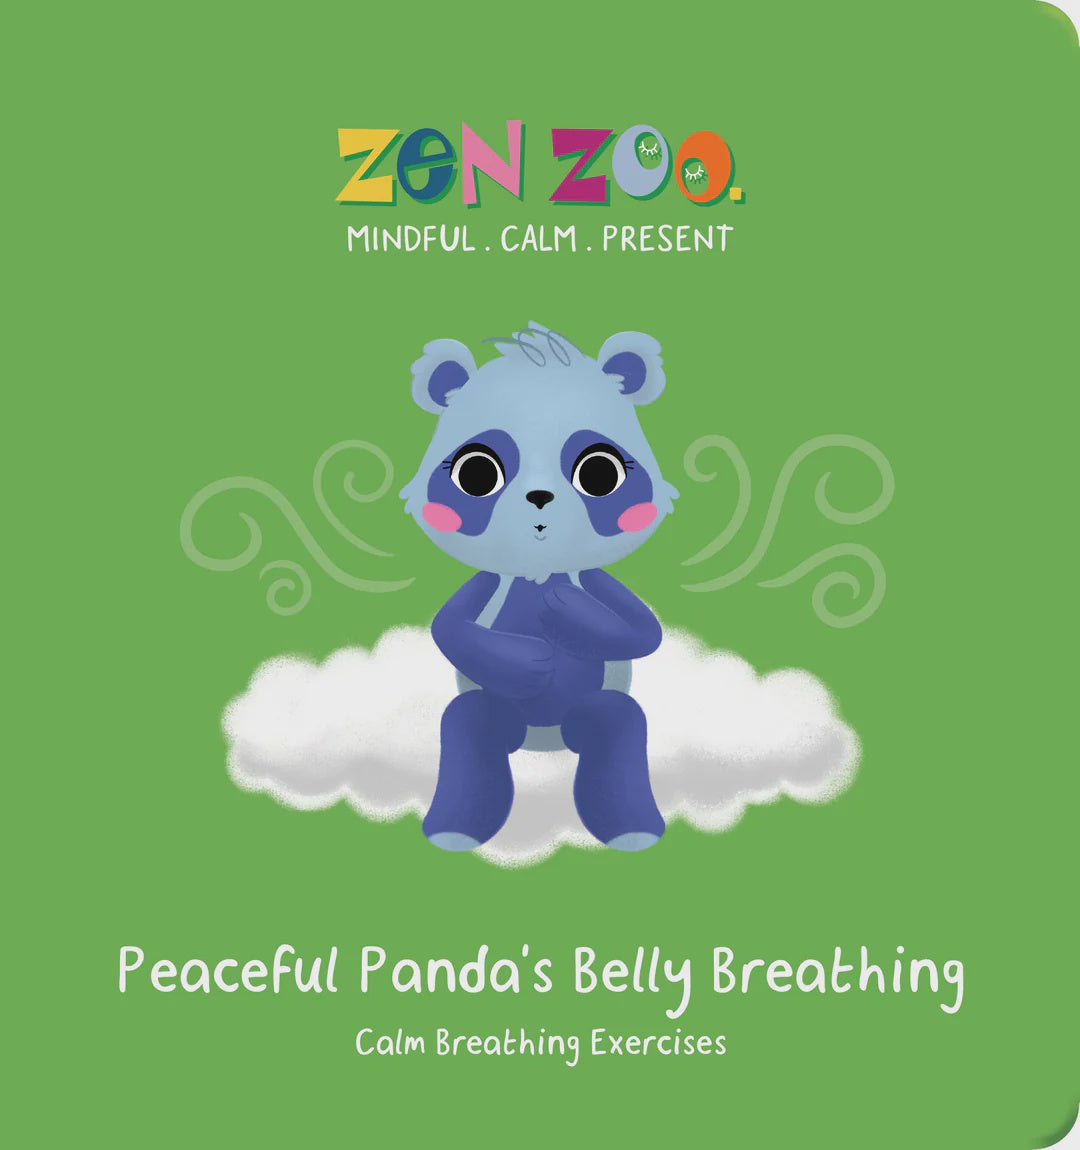 Zen Zoo - Board Book - Peaceful Panda's Belly Breathing